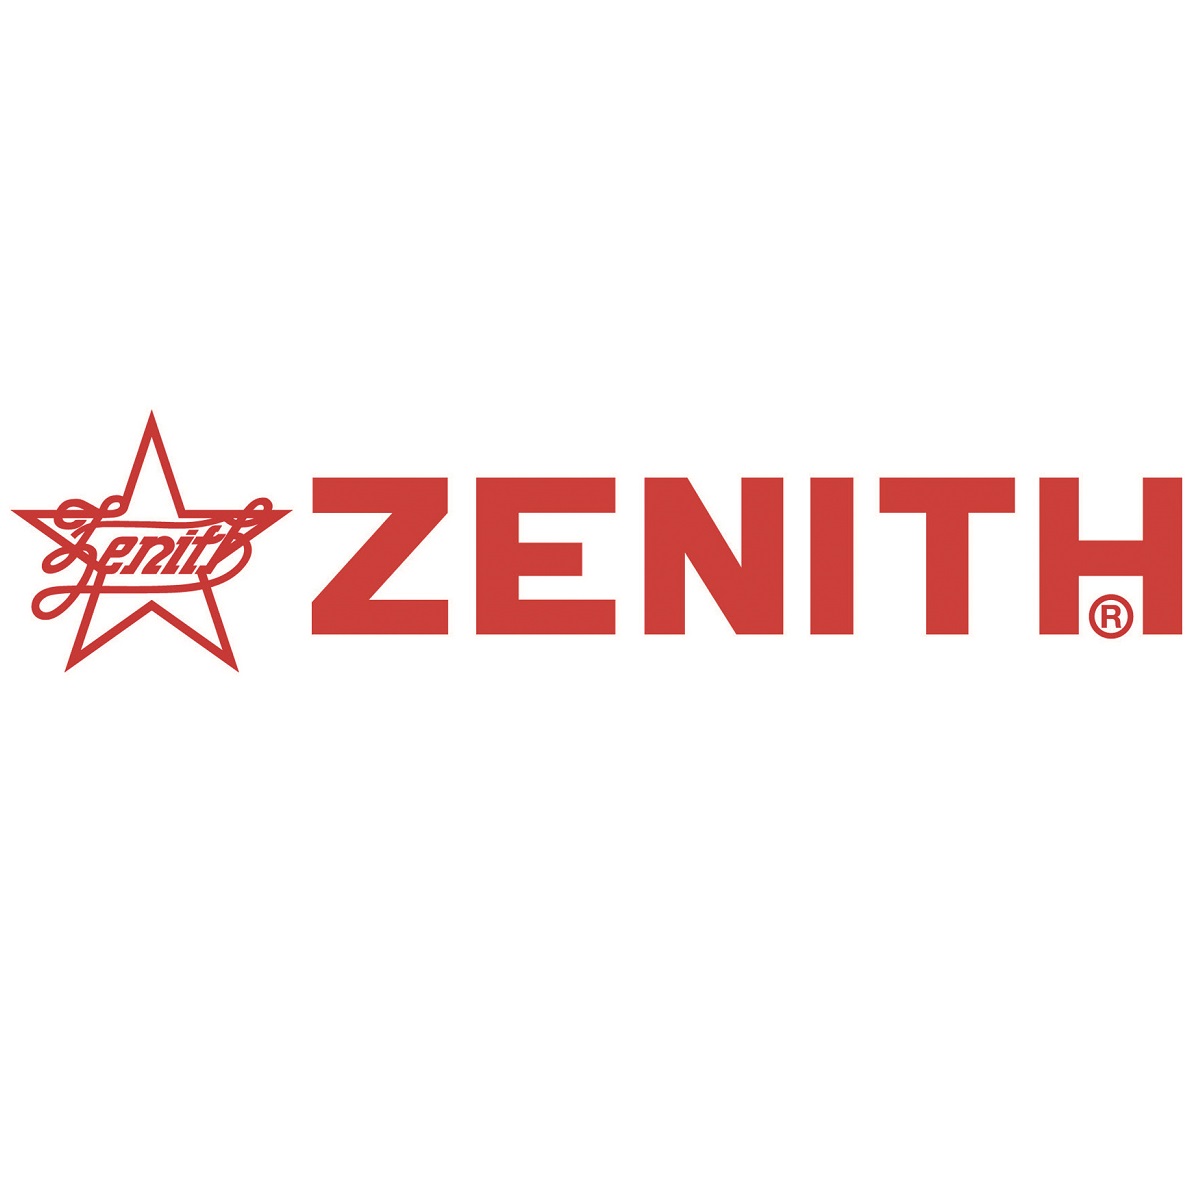 Zenith, 3900mm As Seen In The Block